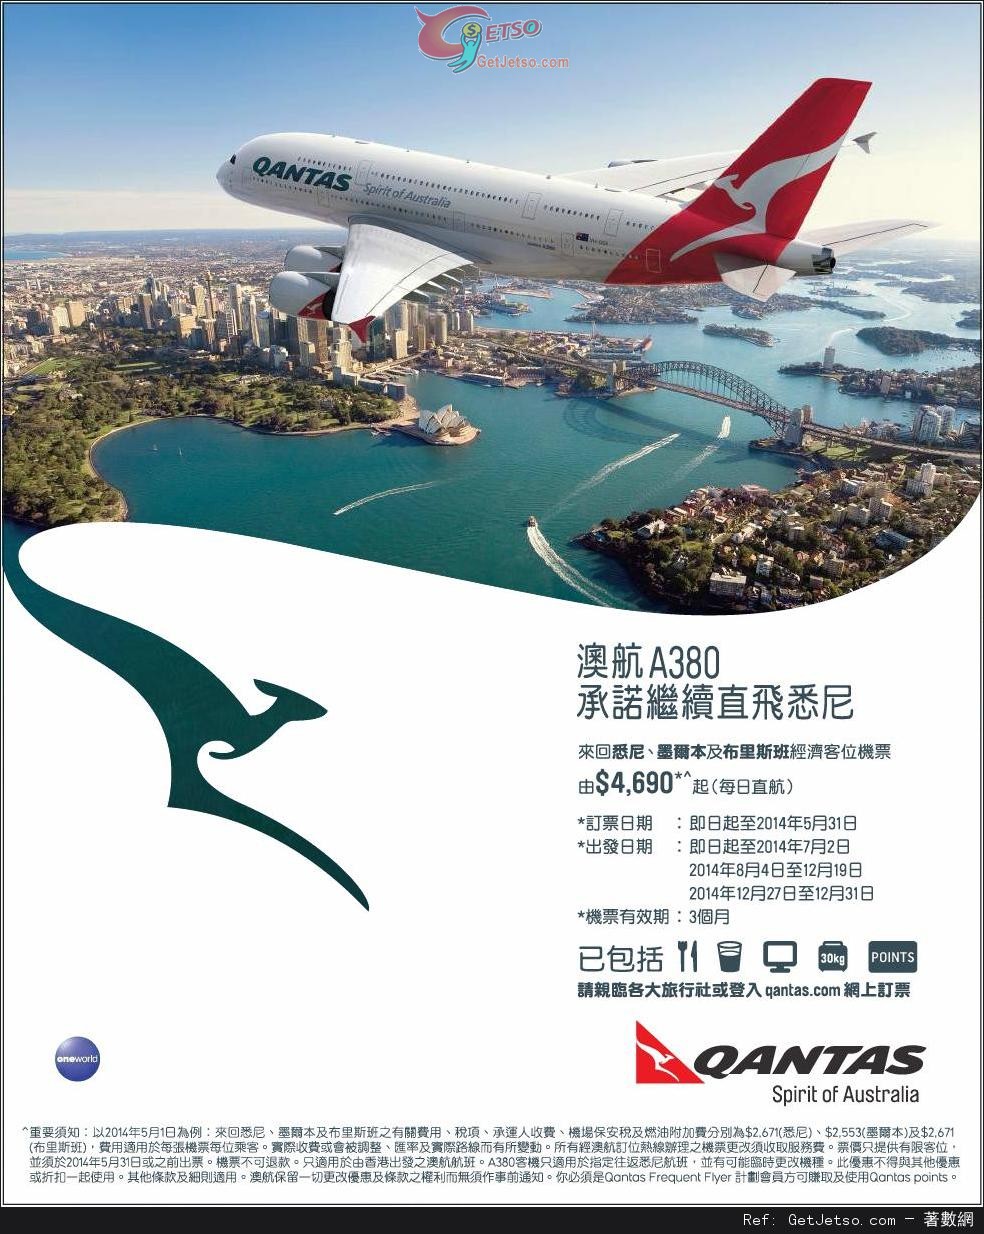 低至90來回悉尼機票優惠@澳洲航空(至14年5月31日)圖片1